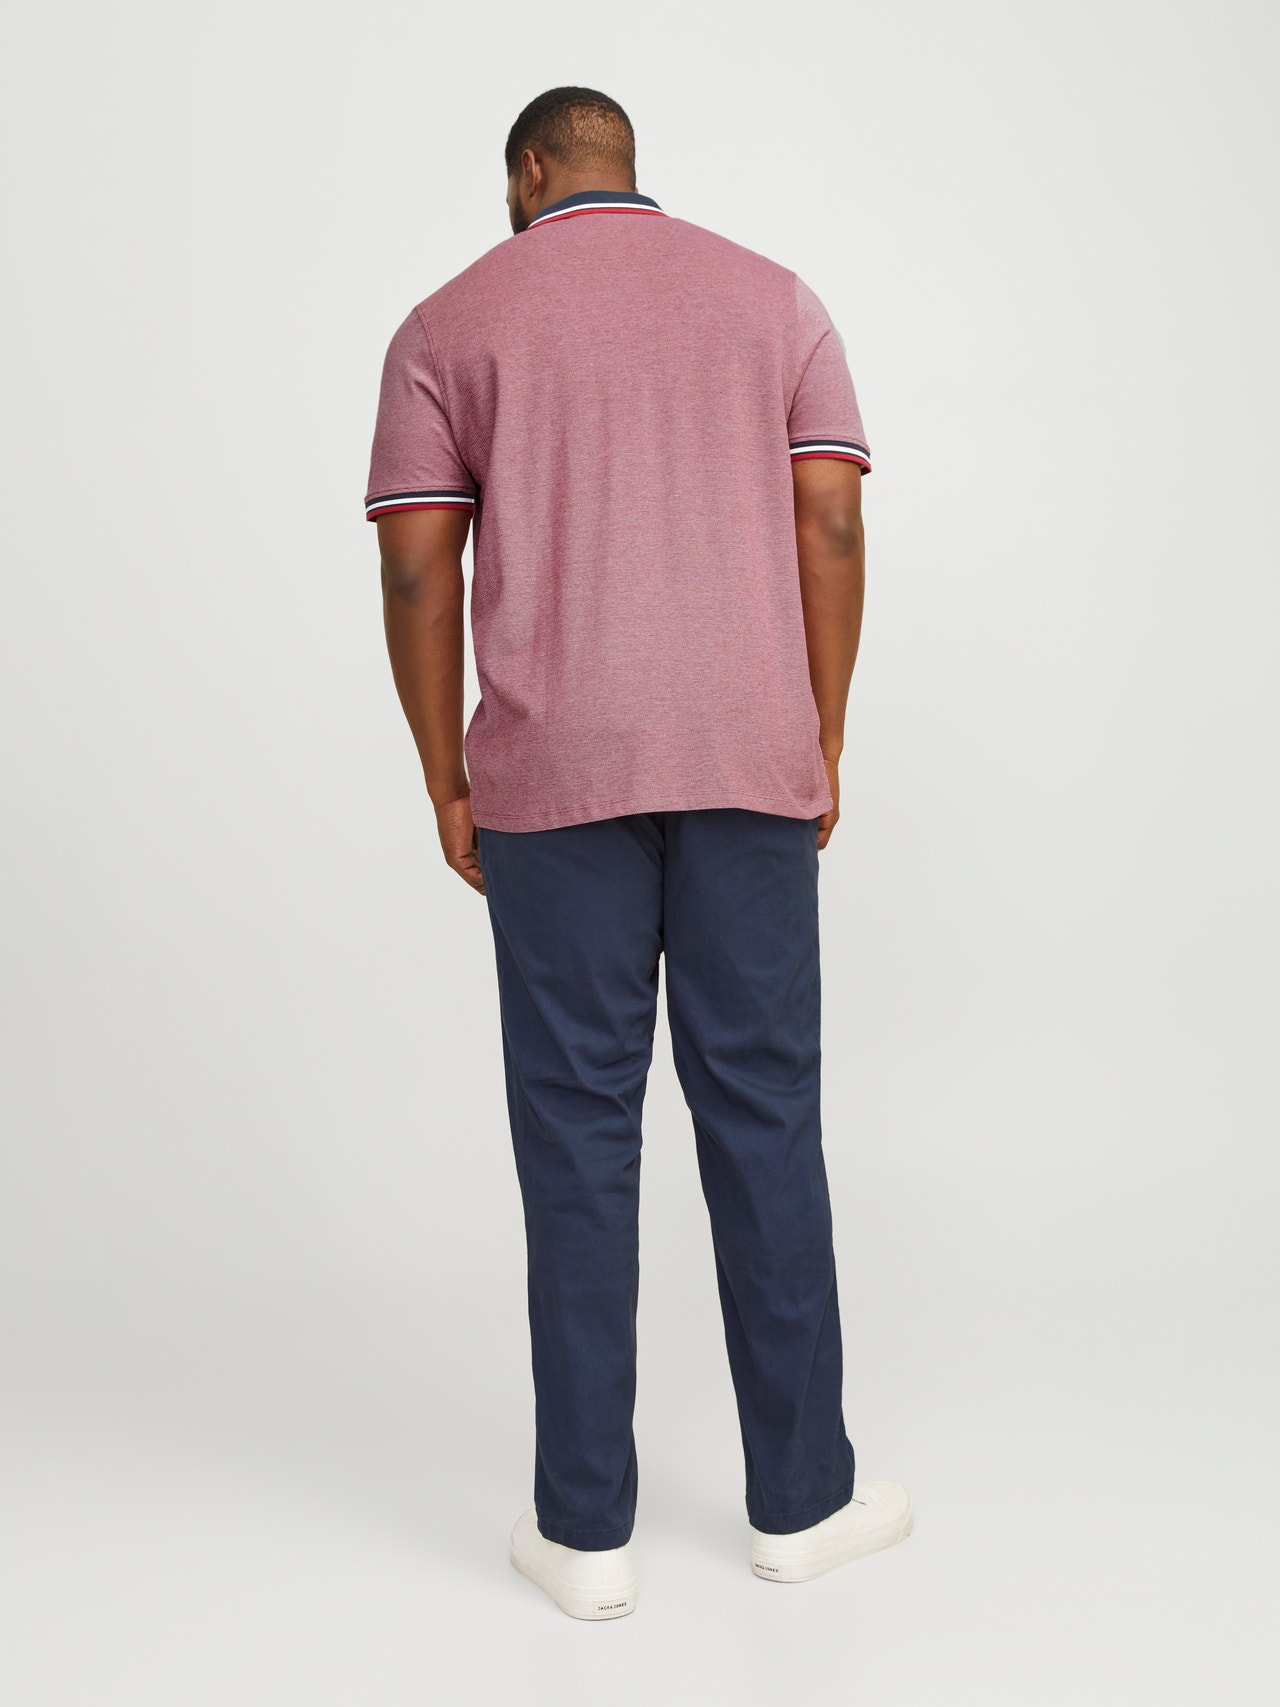 Jack & Jones Plus Size Plain T-shirt -Rio Red - 12143859